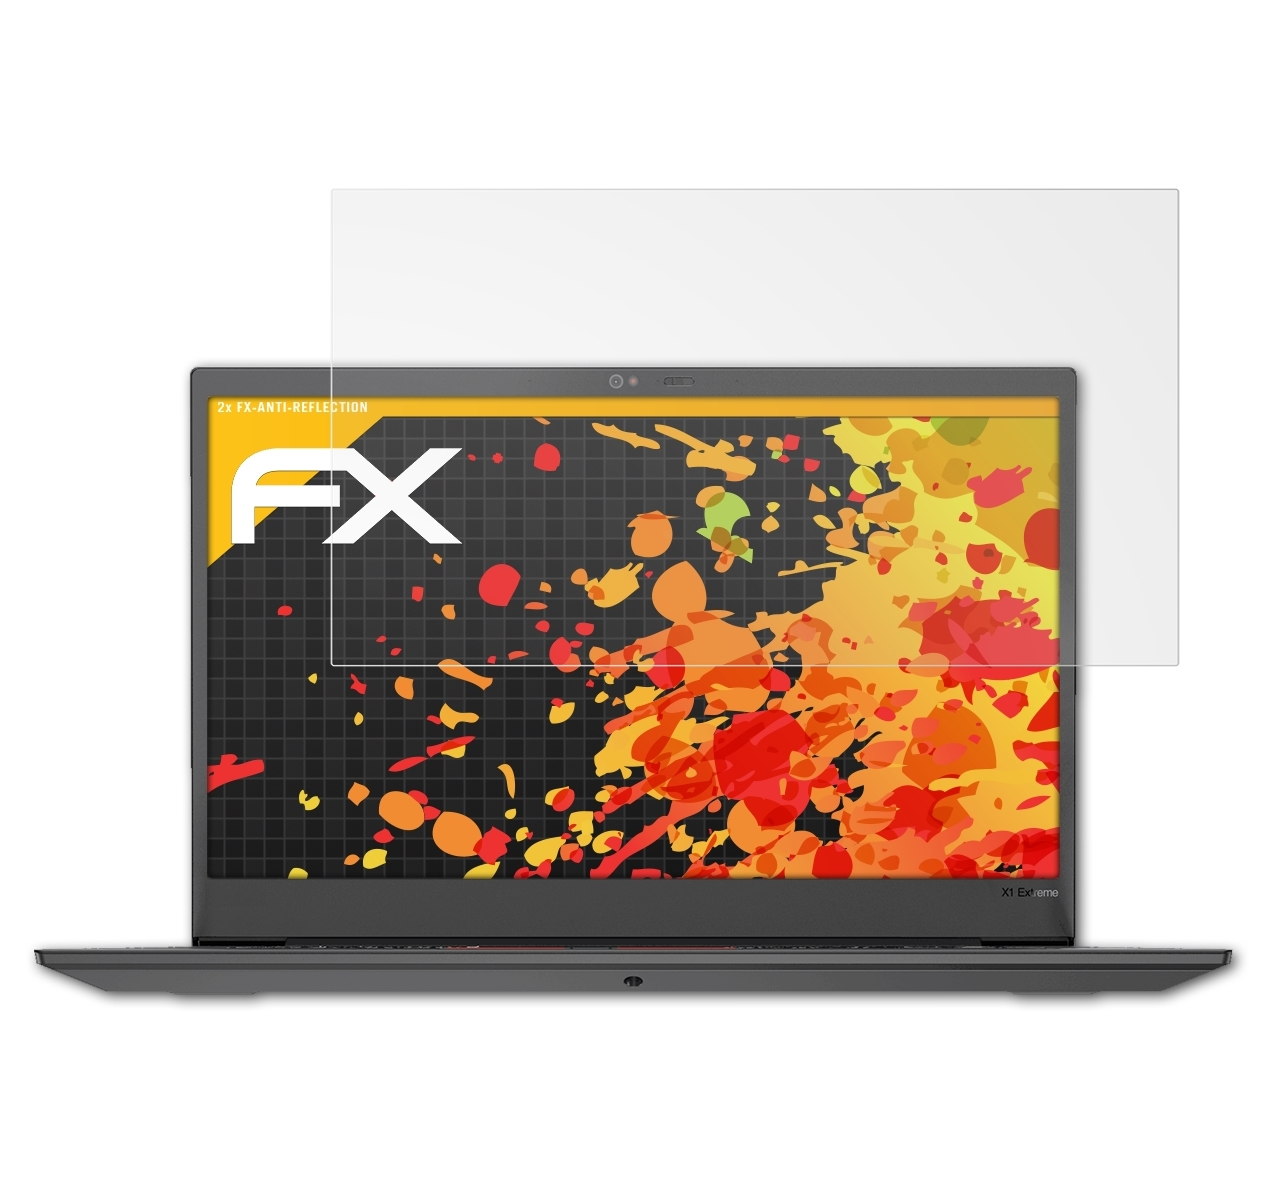 ATFOLIX 2x Displayschutz(für (Gen ThinkPad X1 FX-Antireflex Extreme 2)) Lenovo